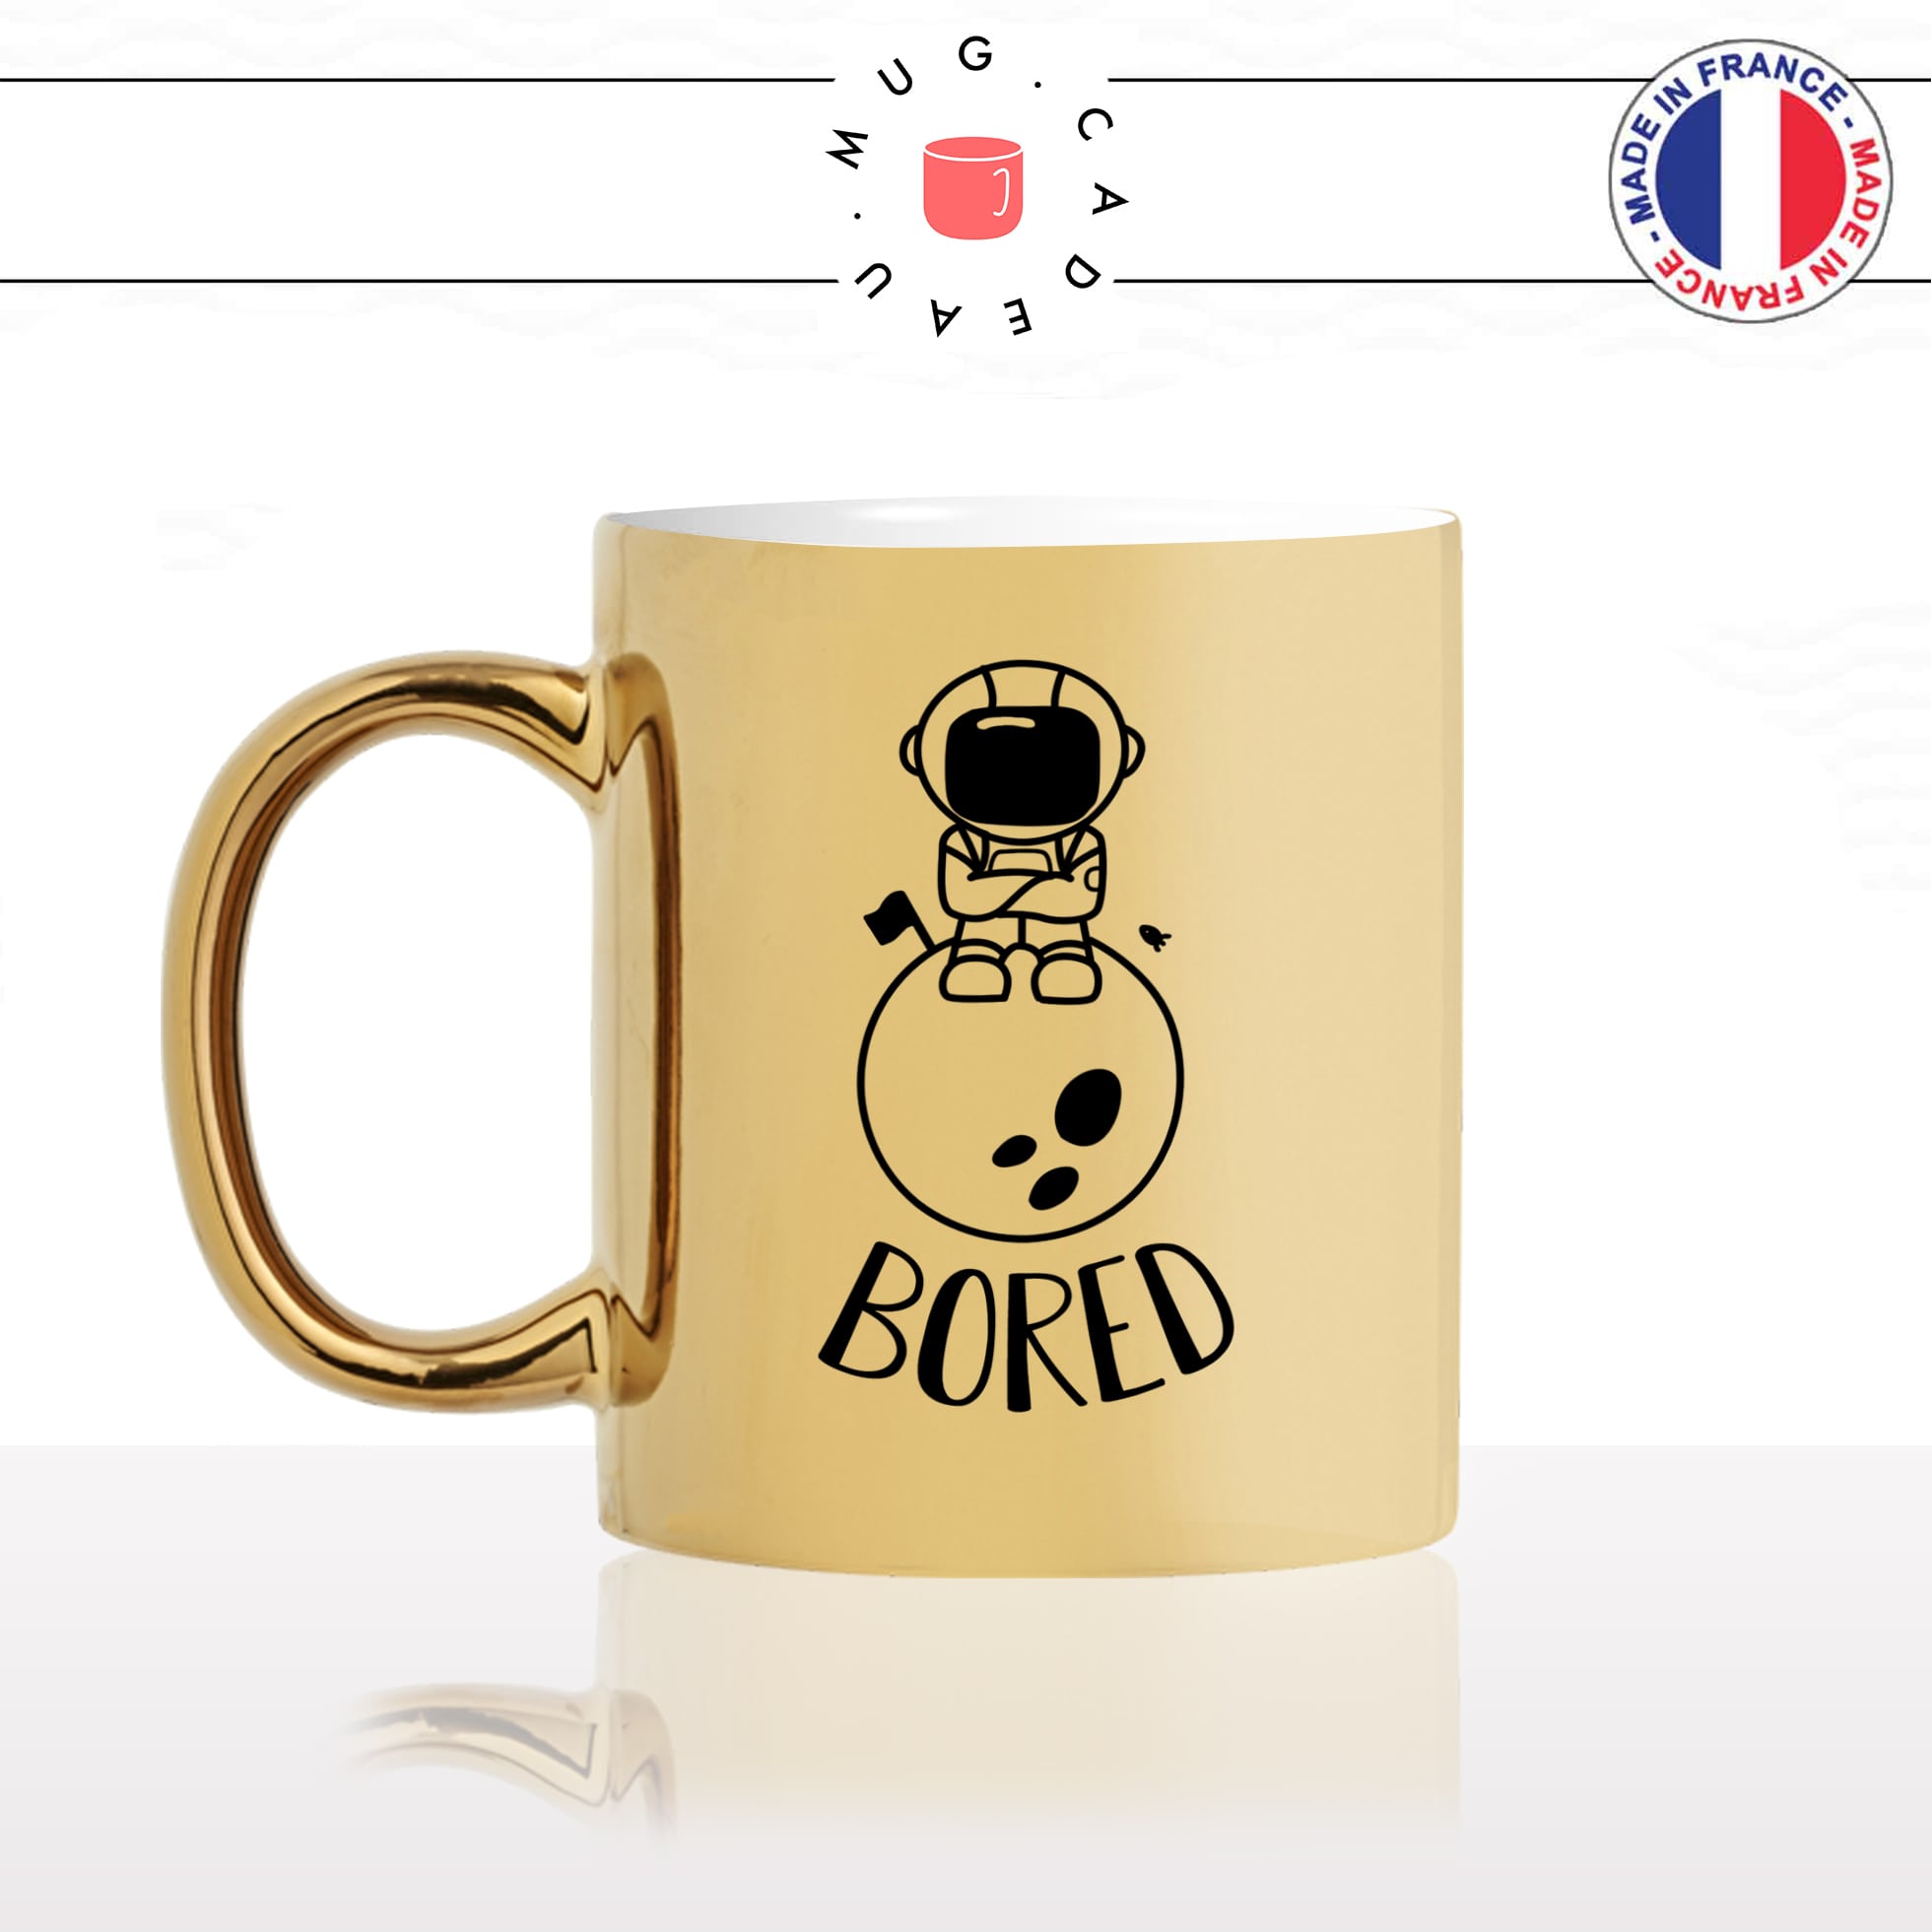 mug-tasse-or-doré-gold-espace-astronaute-bored-planetes-fusée-lune-nasa-mignon-cool-idée-cadeau-drole-original-fun-café-thé-personnalisé-min